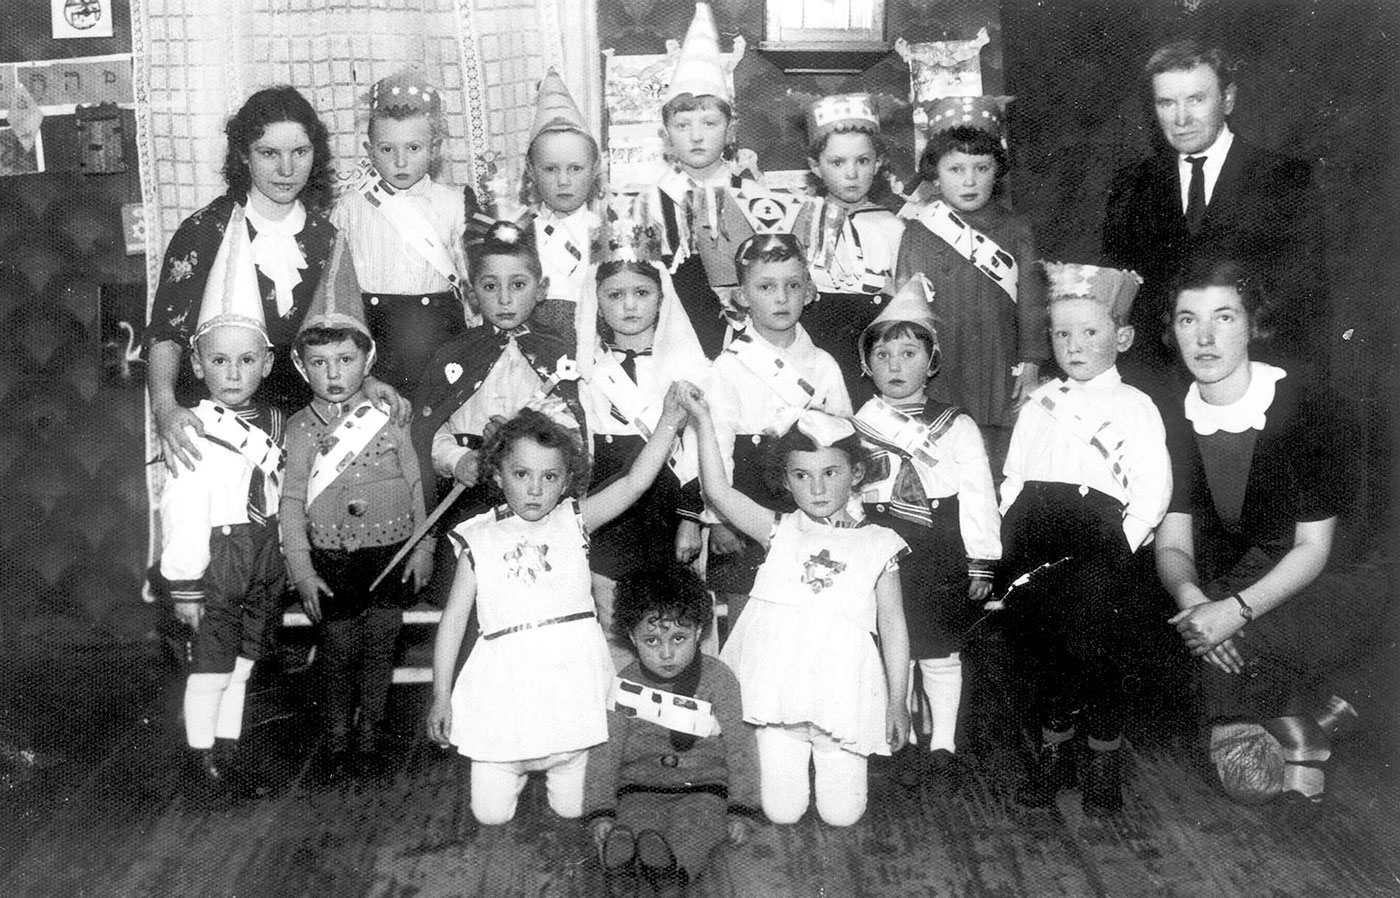 מחזה לפורים שהועלה בגן ילדים ברקישוק (רוקישקיס) שבליטא, 2 במרס 1938